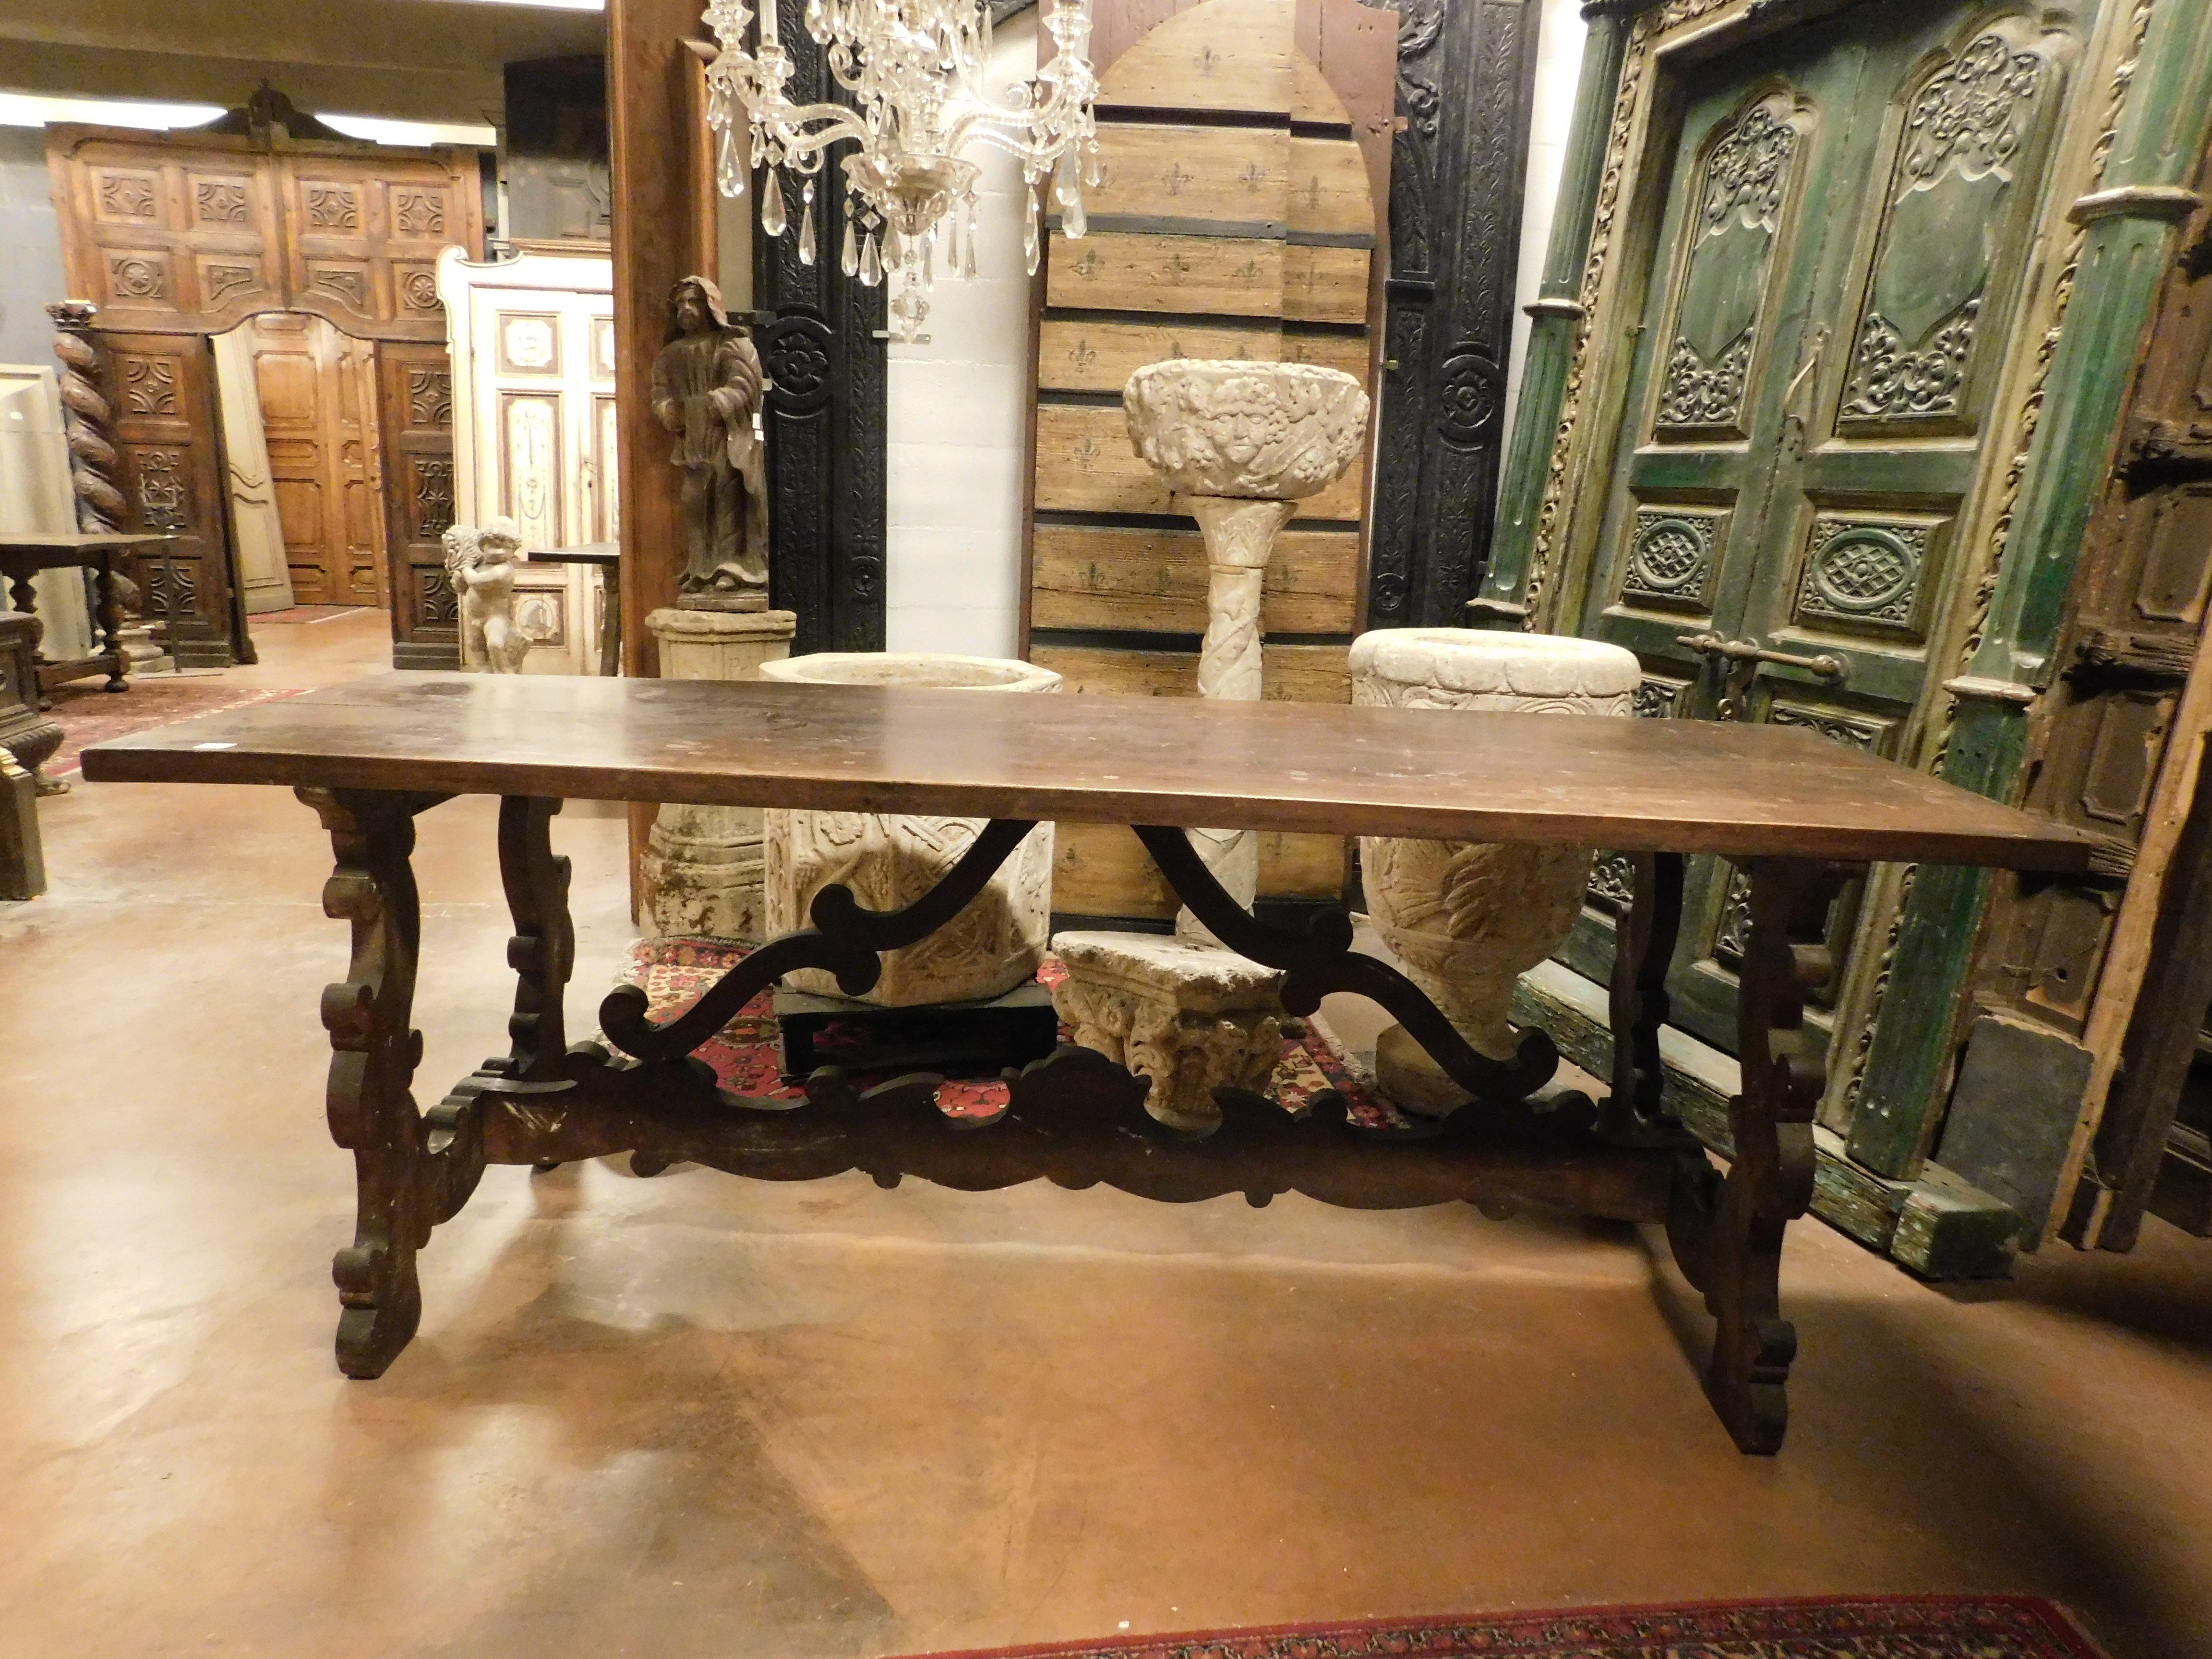 Grande table de réfectoire ancienne, en noyer, avec un double plateau très épais et des pieds ondulés richement sculptés, fabriquée à la main à la fin des années 1800, en Italie.
Idéale à la fois comme table d'appoint et comme éventuelle table de